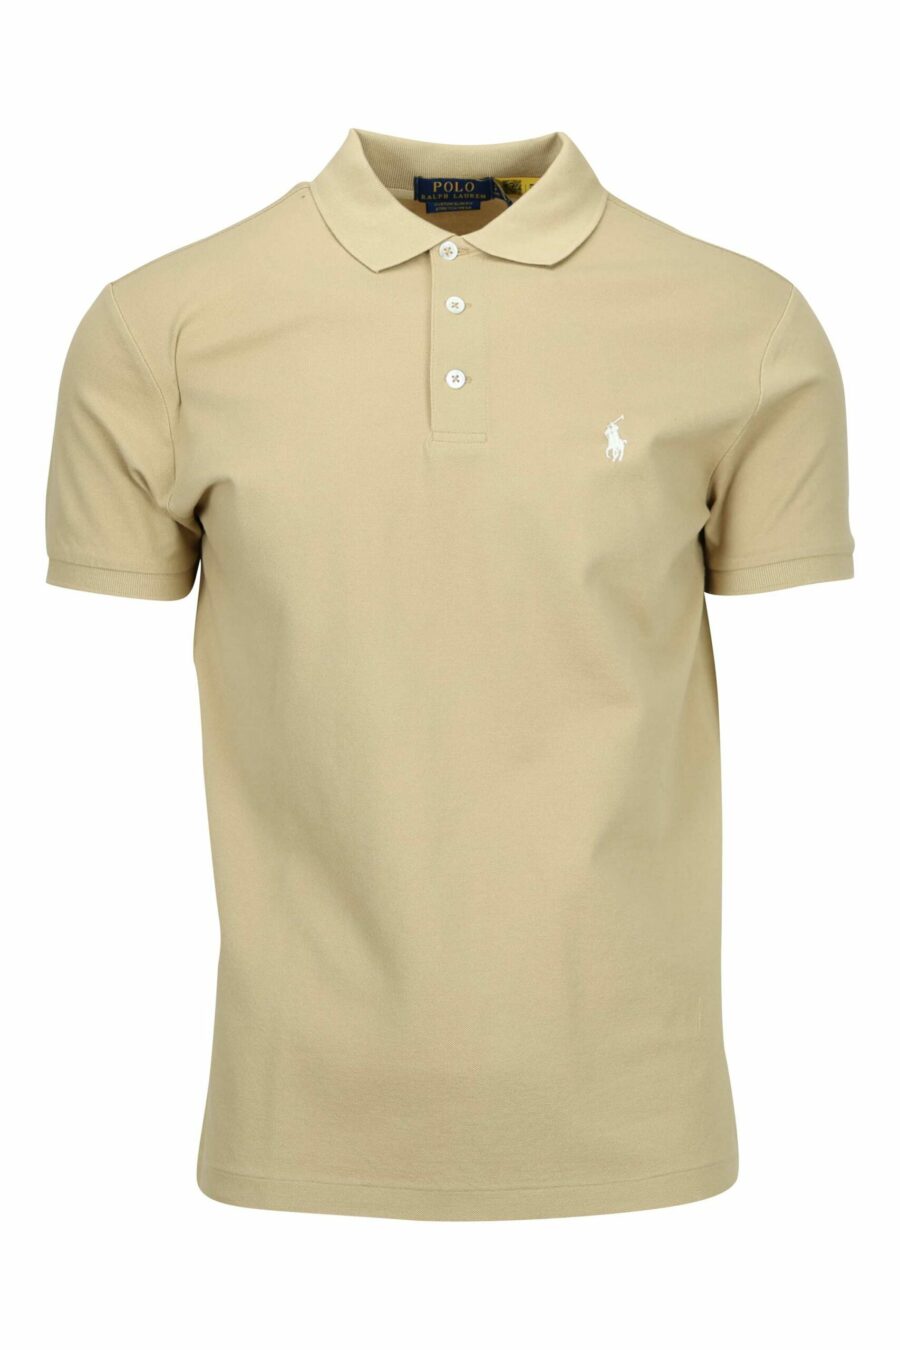 Beige polo shirt with white mini-logo "polo" - 3616535912021 scaled